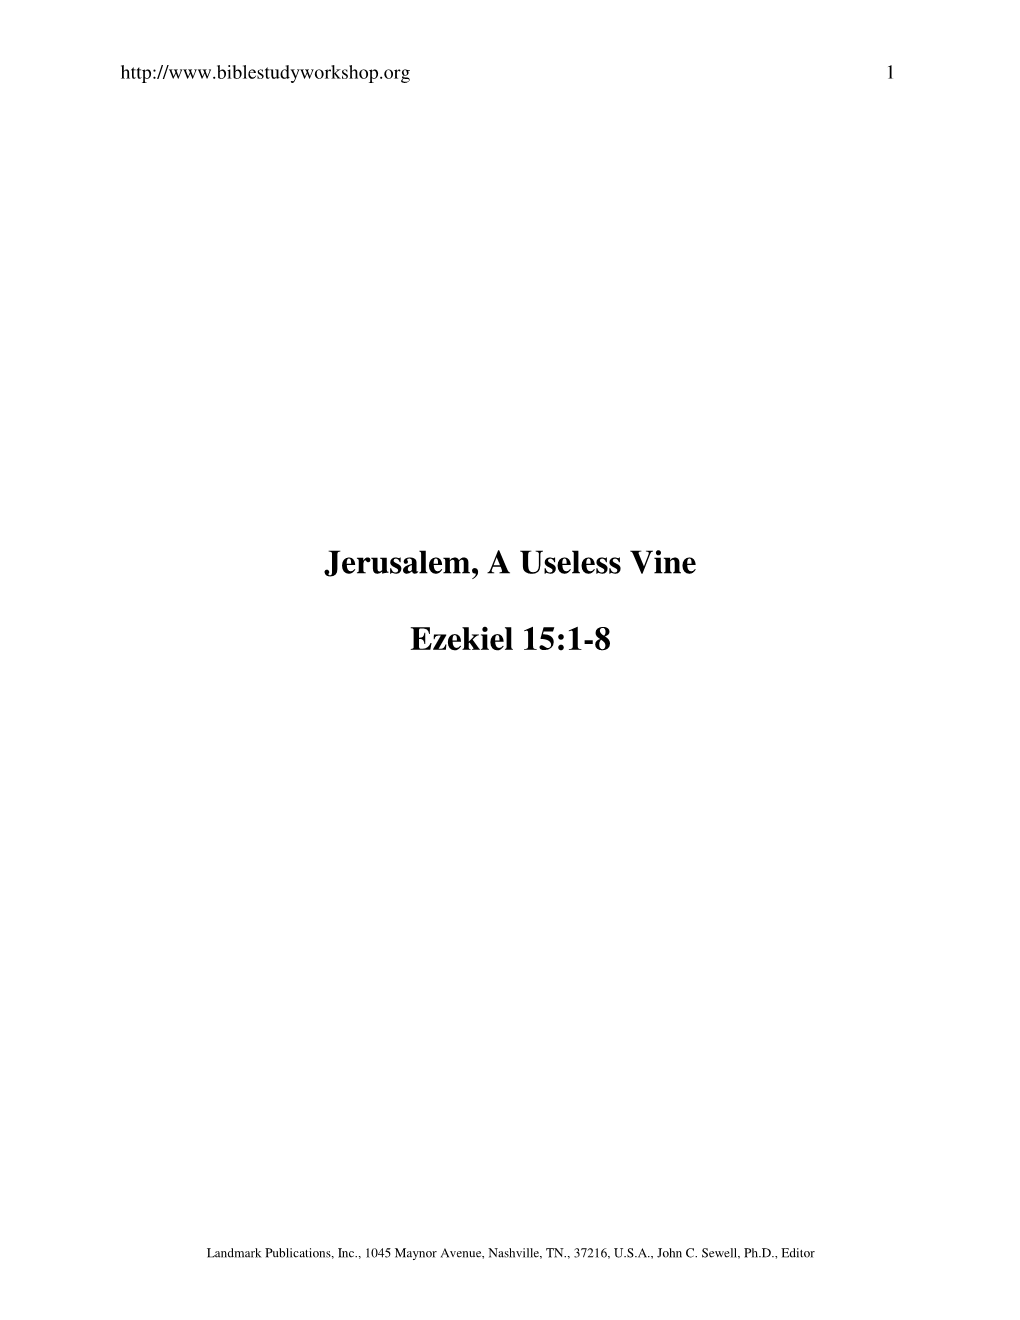 Jerusalem, a Useless Vine Ezekiel 15:1-8